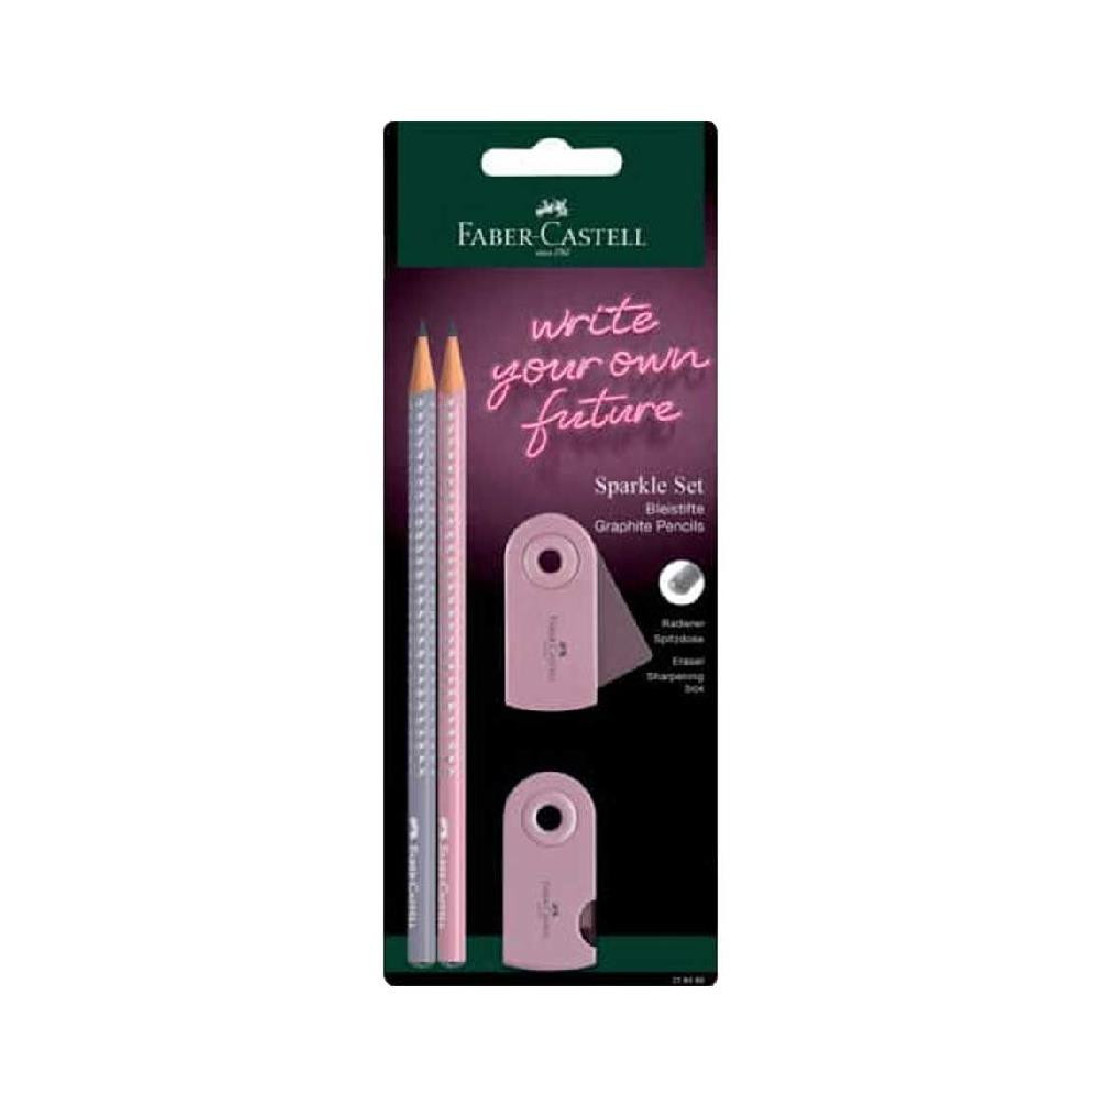 Βlister Set Sparkle 2 Μολύβια+Γόμα+Ξύστρα Ροζ-Γκρί 218480 Faber Castell